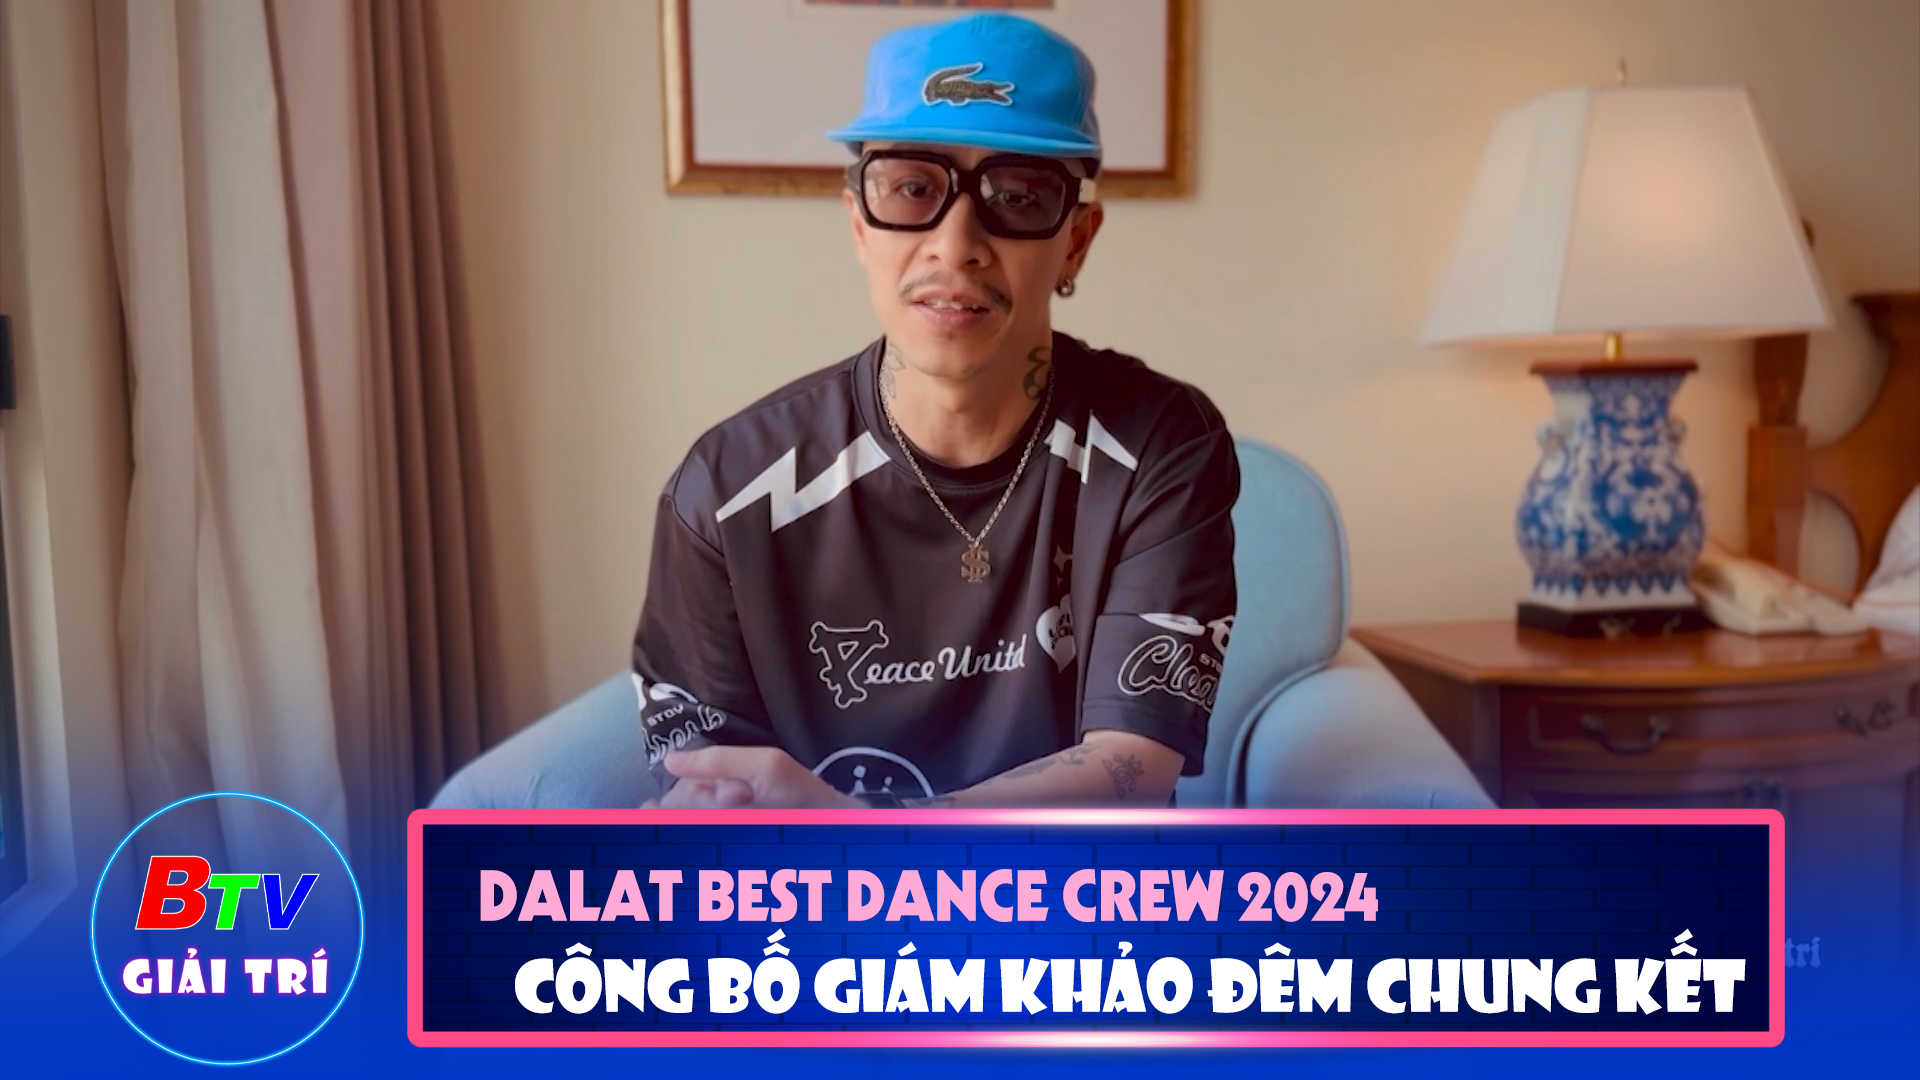 Dalat Best Dance Crew 2024 - Hoa Sen Home International Cup công bố dàn Giám khảo đêm chung kết | Điểm hẹn giải trí | 24/4/2024